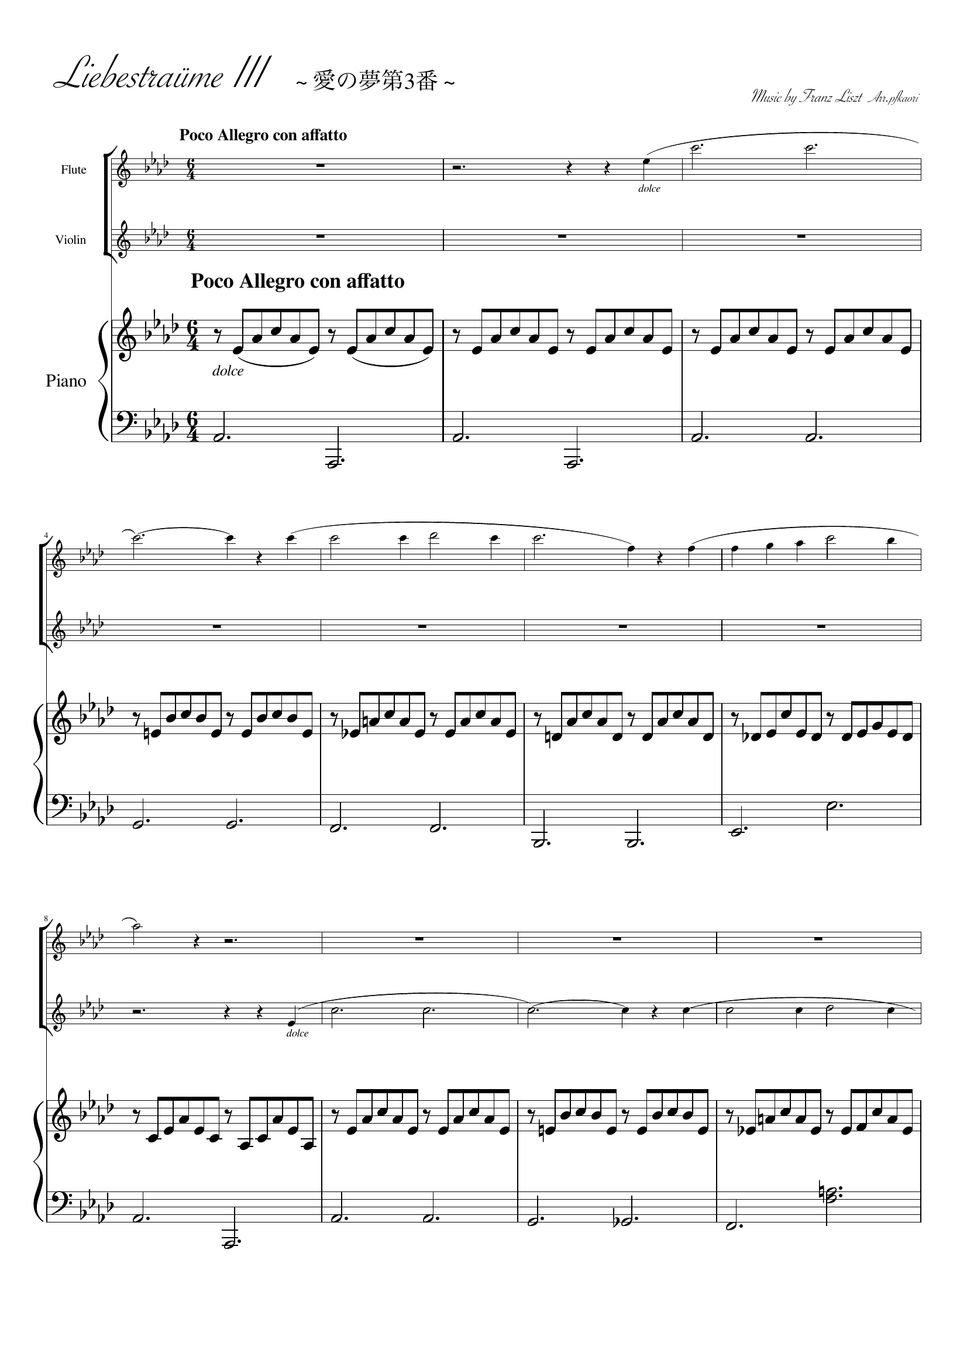 フランツ・リスト - 愛の夢第3番 (As・ピアノトリオ/ヴァイオリン&フルート) by pfkaori